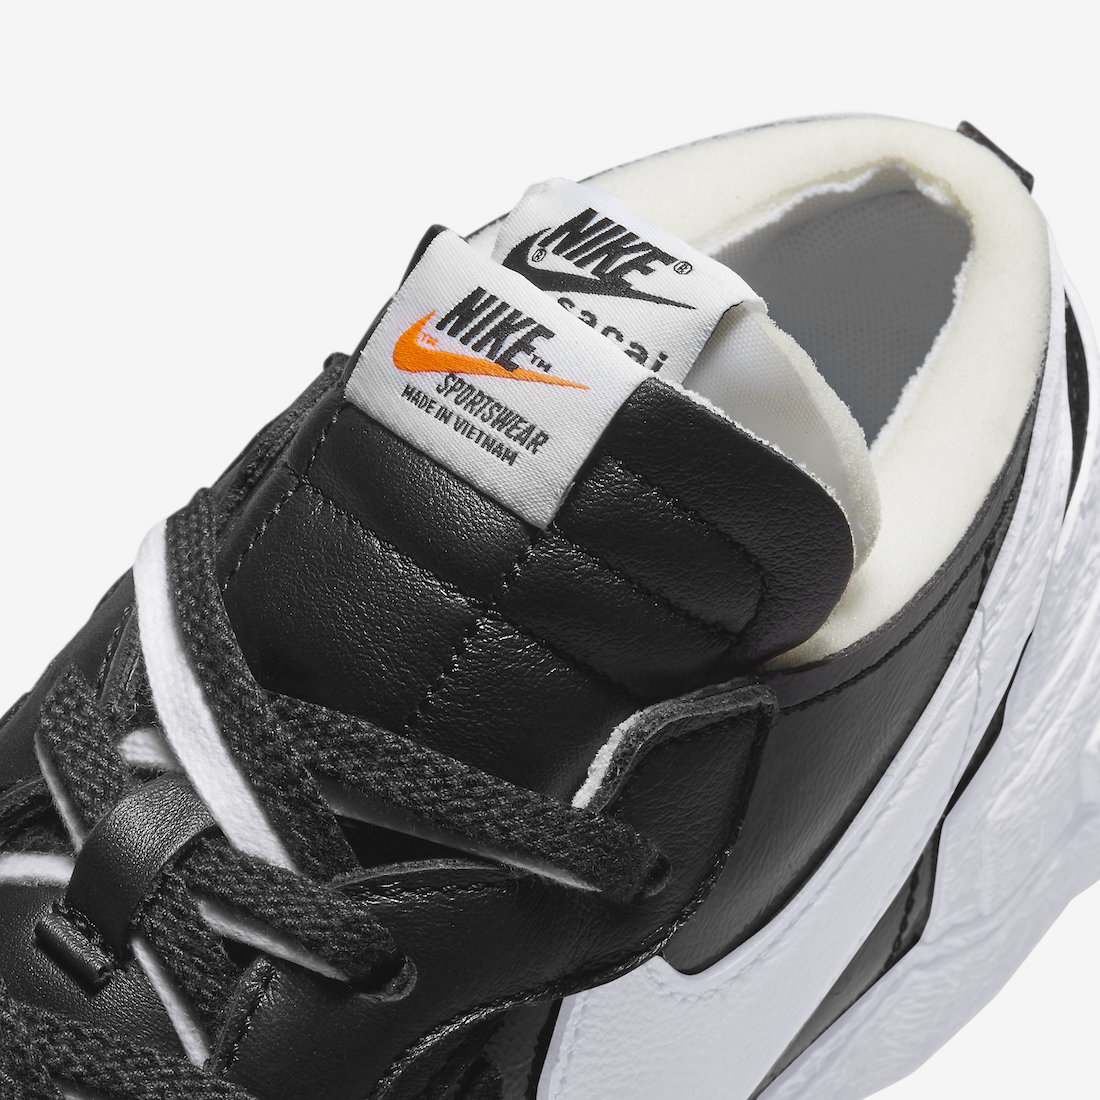 sacai x Nike Blazer Low Black DM6443-001 Release Date